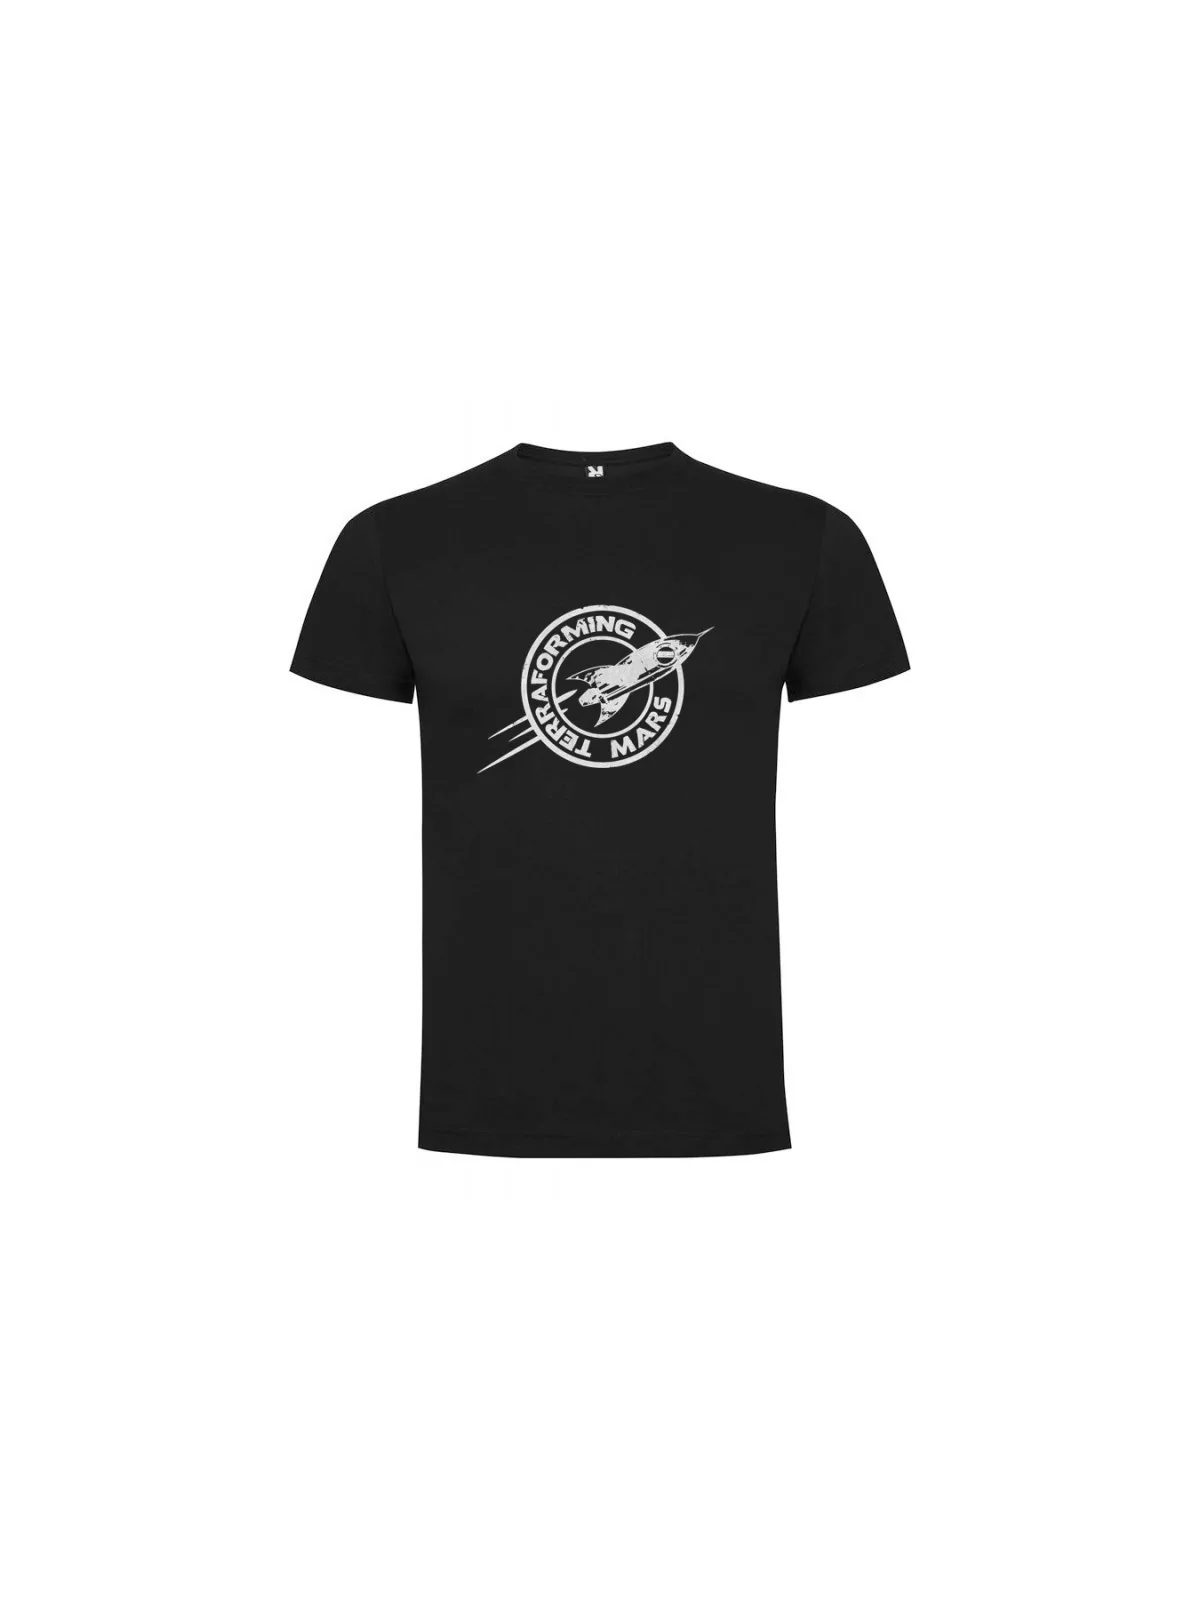 Comprar Camiseta Unisex Mars Express barato al mejor precio 10,00 € de